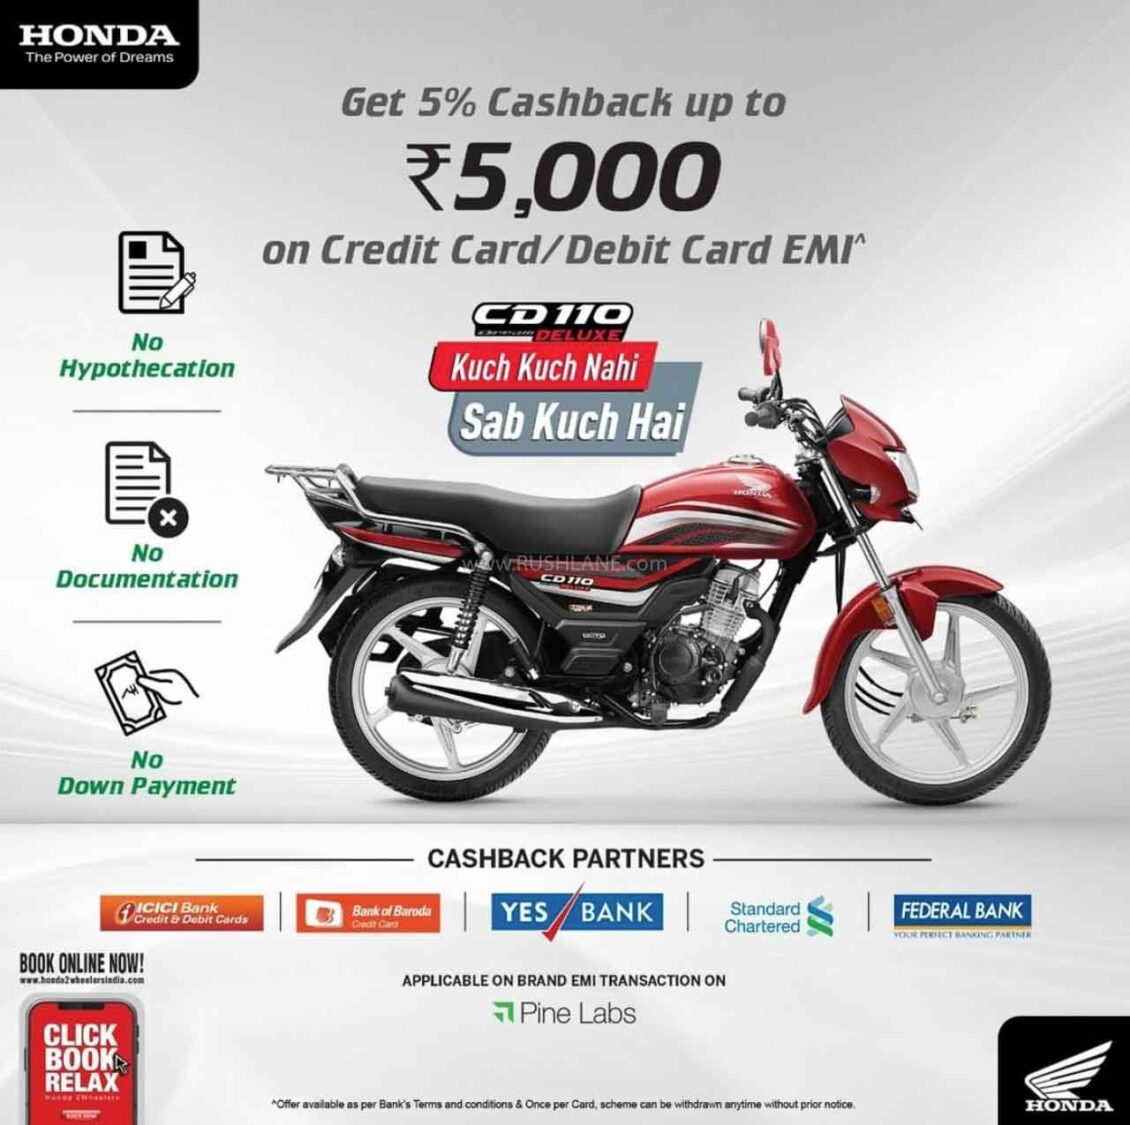 Honda CD110 Cashback Offer